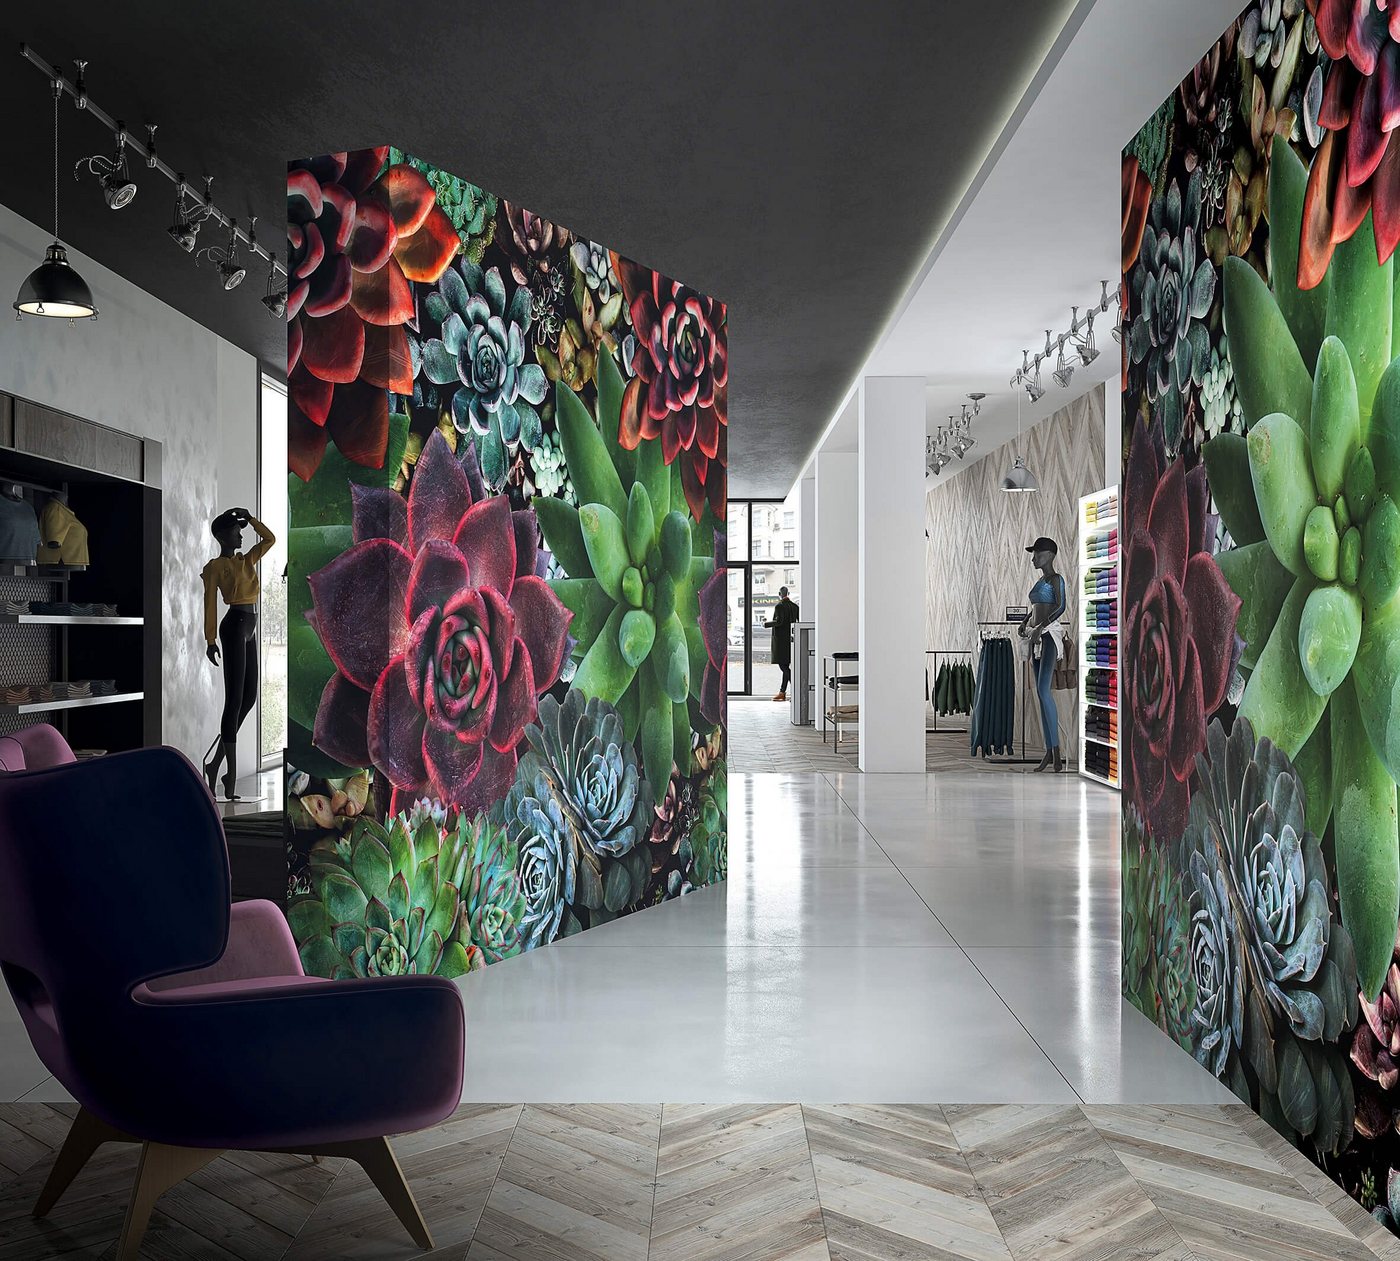 Newroom Vliestapete, [ 2,7 x 2,65m ] großzügiges Motiv - kein wiederkehrendes Muster - nahtlos große Flächen möglich - Fototapete Wandbild Blumen Sukkulente Made in Germany von Newroom